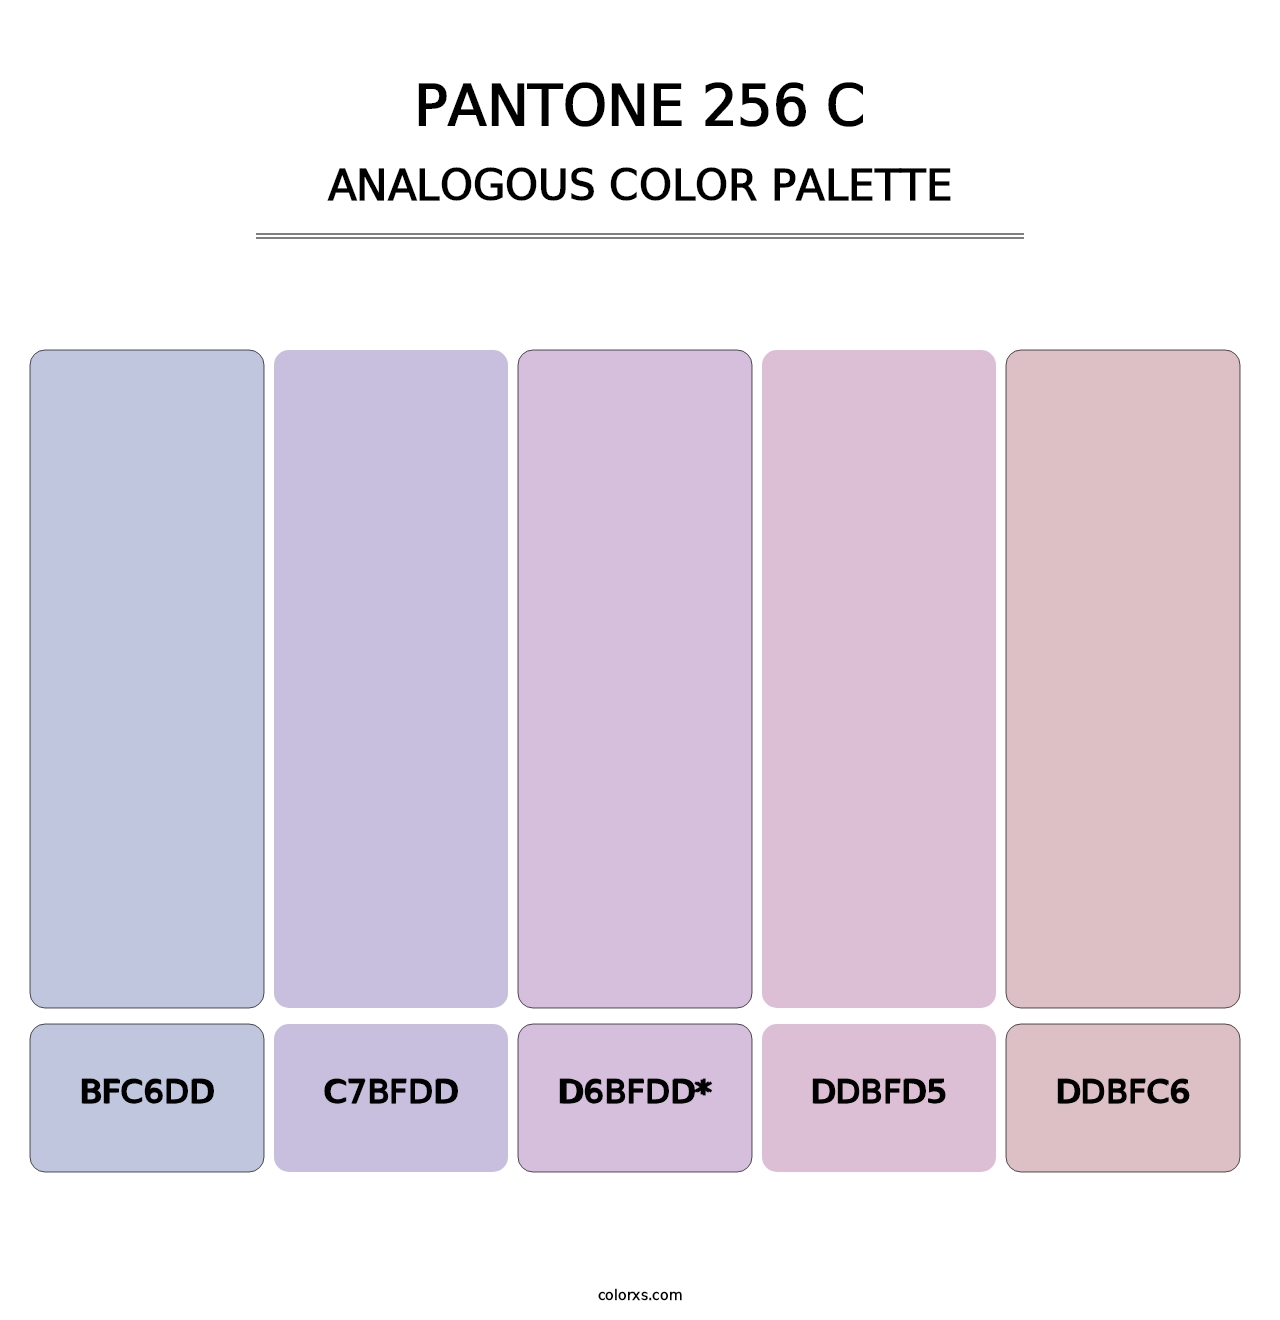 PANTONE 256 C - Analogous Color Palette